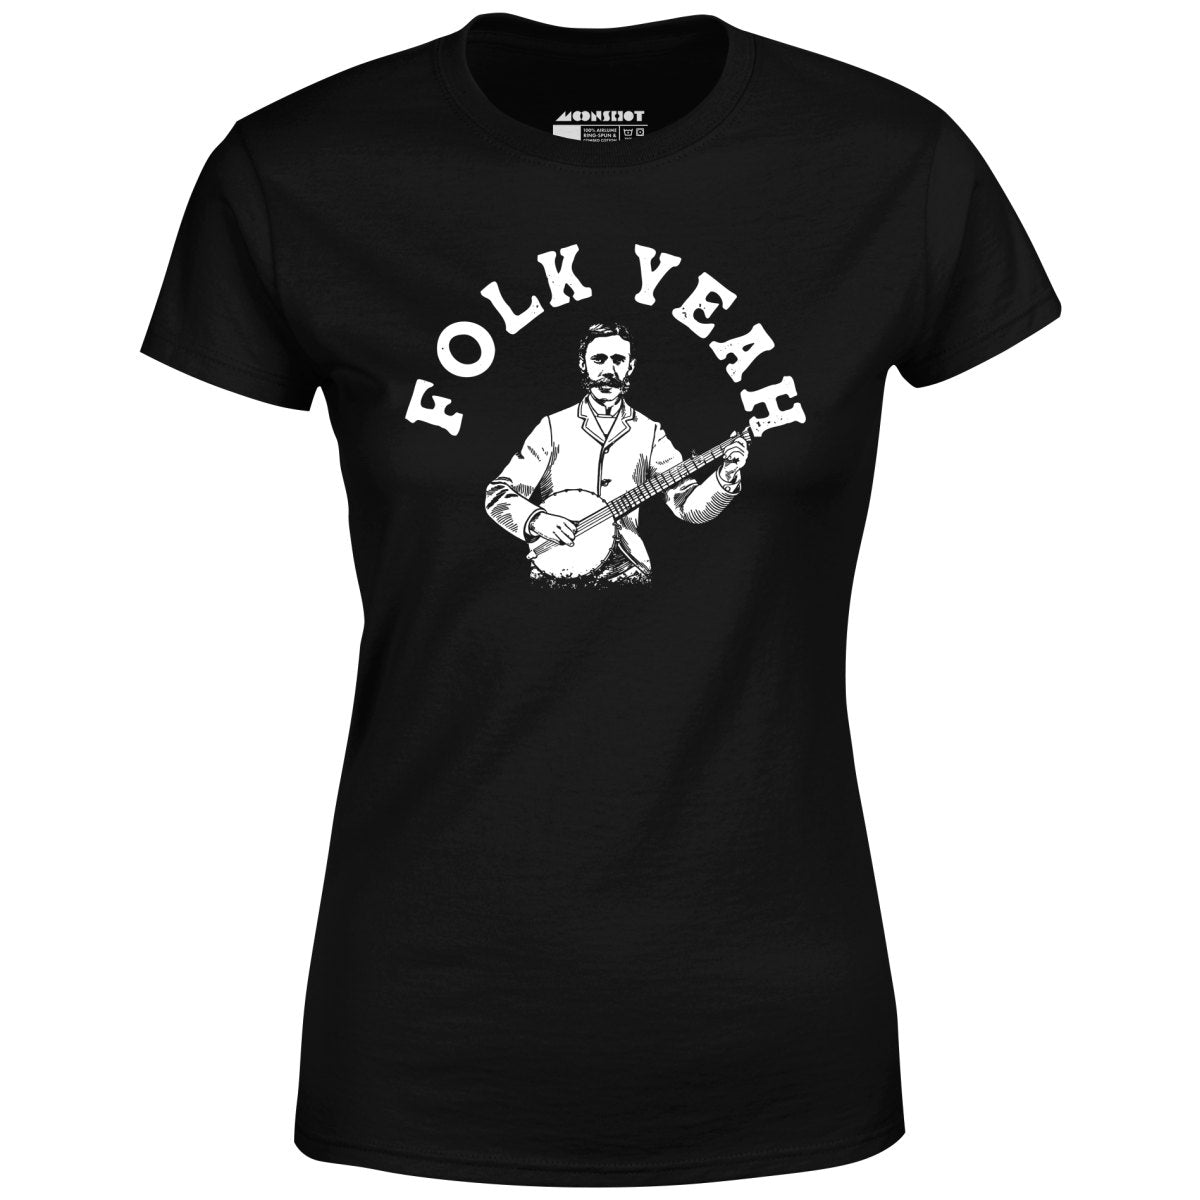 Folk Yeah - Women's T-Shirt